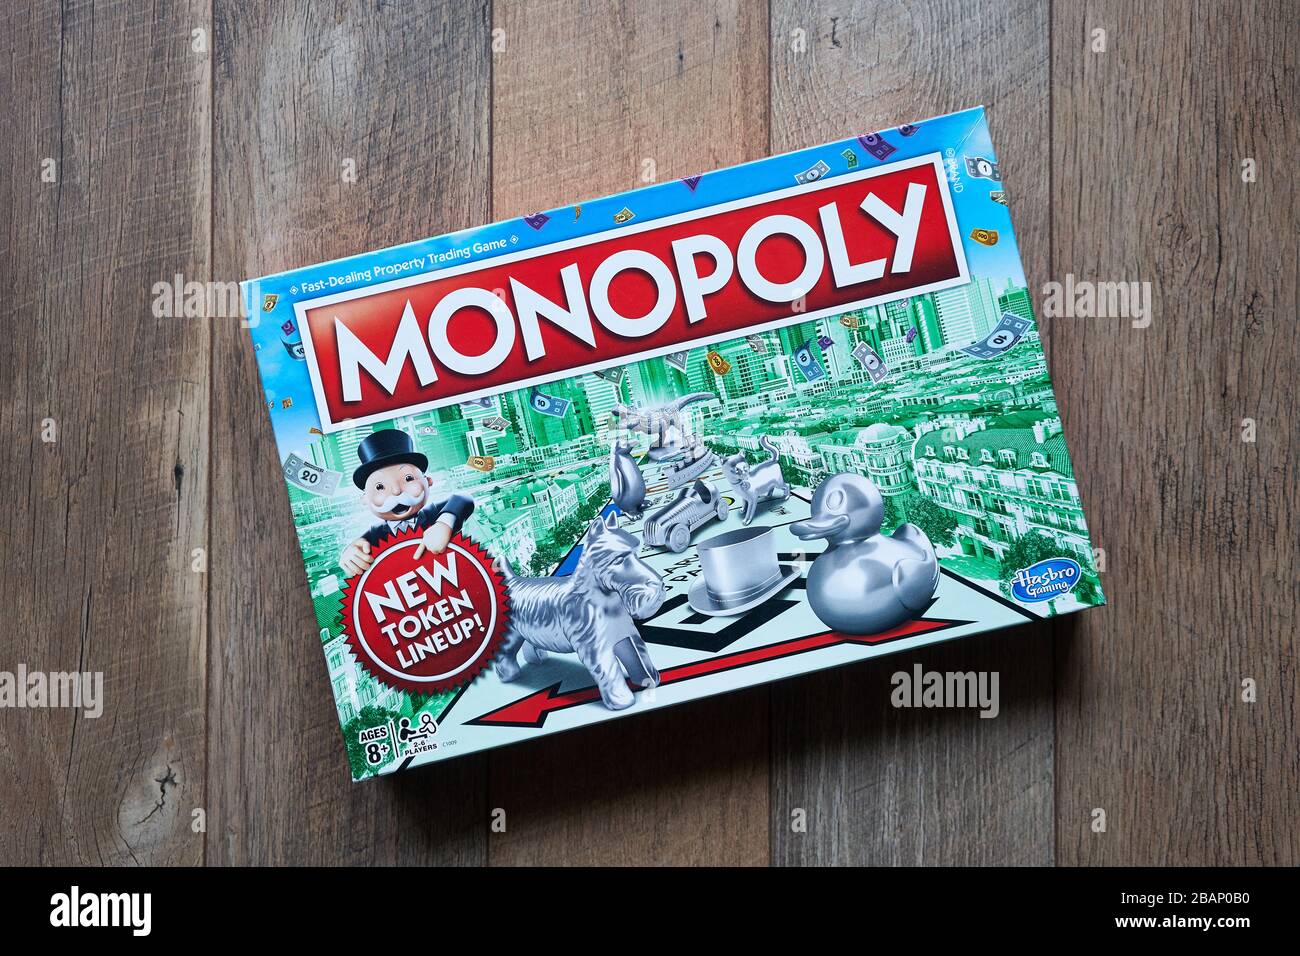 Scatola del gioco del bordo di monopolio isolata su uno sfondo di legno. Il classico gioco di tavola di trading di proprietà ad alta velocità è attualmente pubblicato da Hasbro. Foto Stock